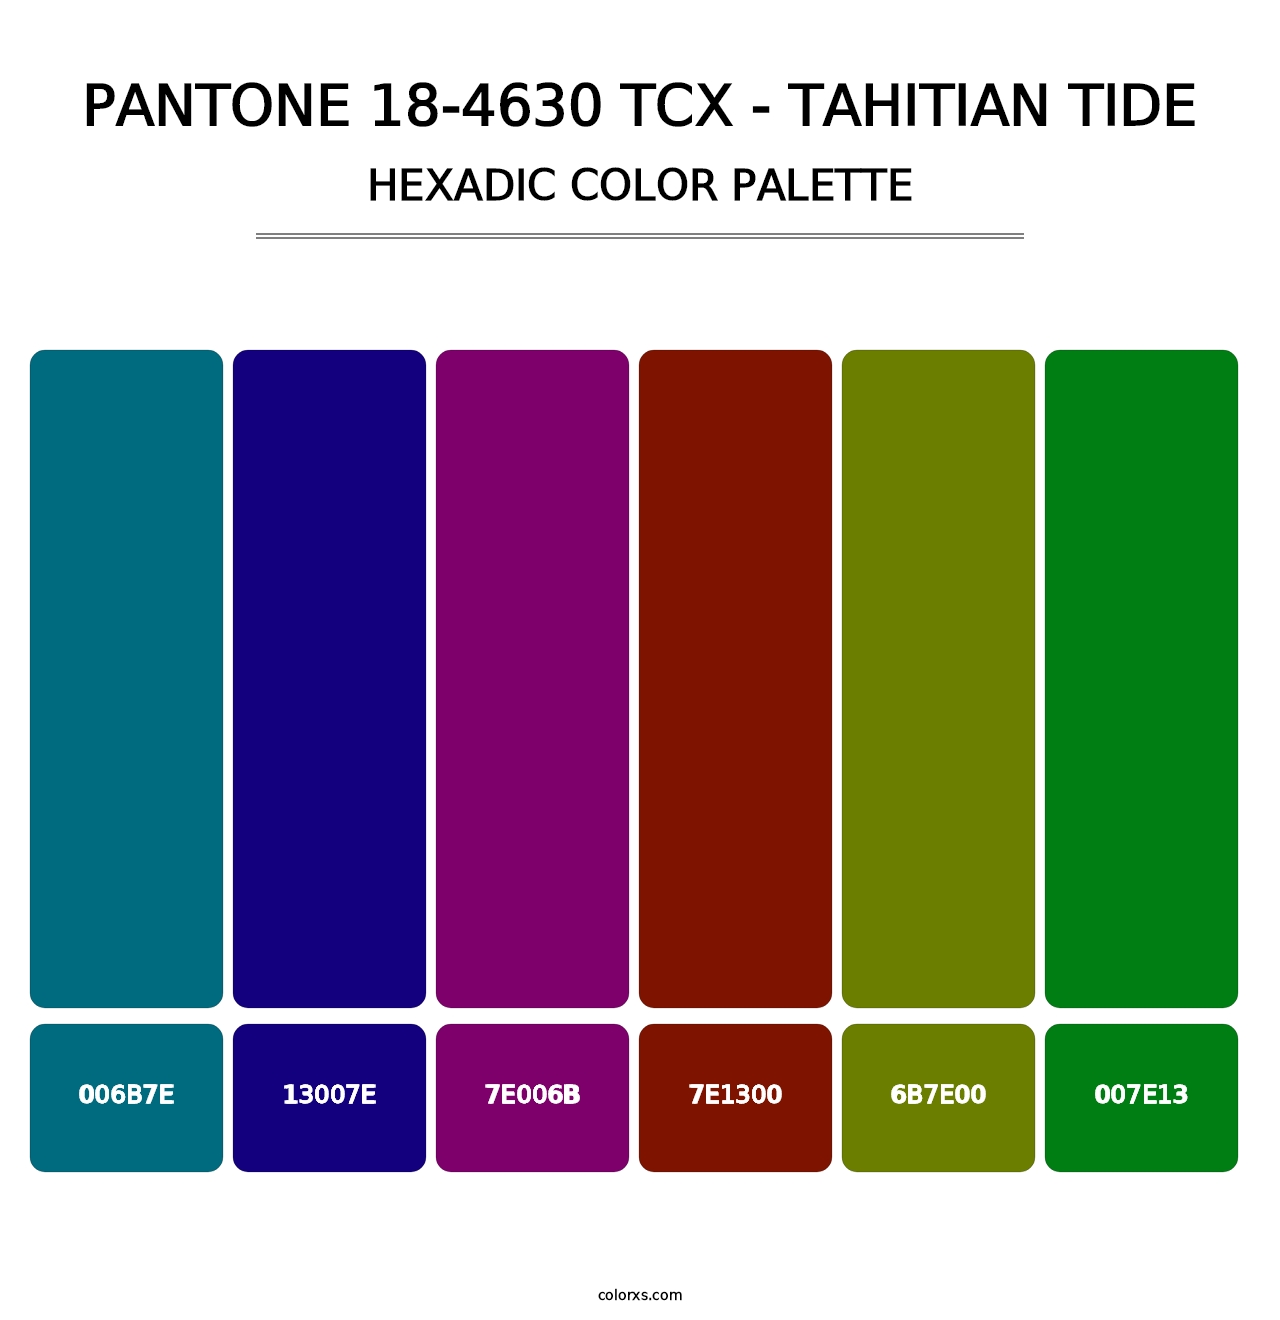 PANTONE 18-4630 TCX - Tahitian Tide - Hexadic Color Palette